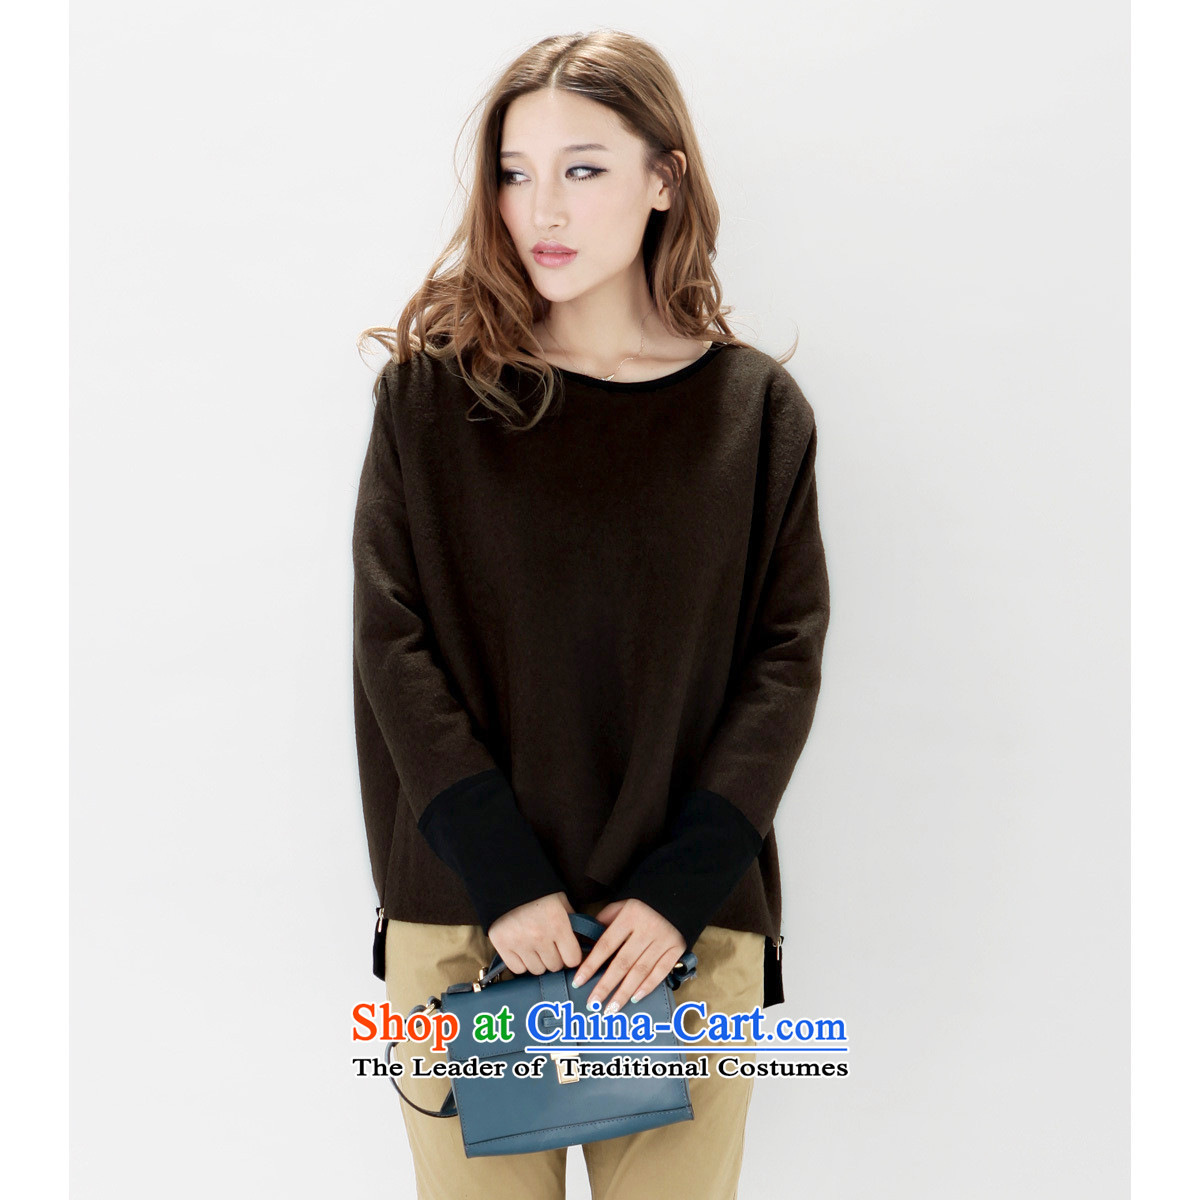 9M Tu? The jacket brown wool sweater Brown M